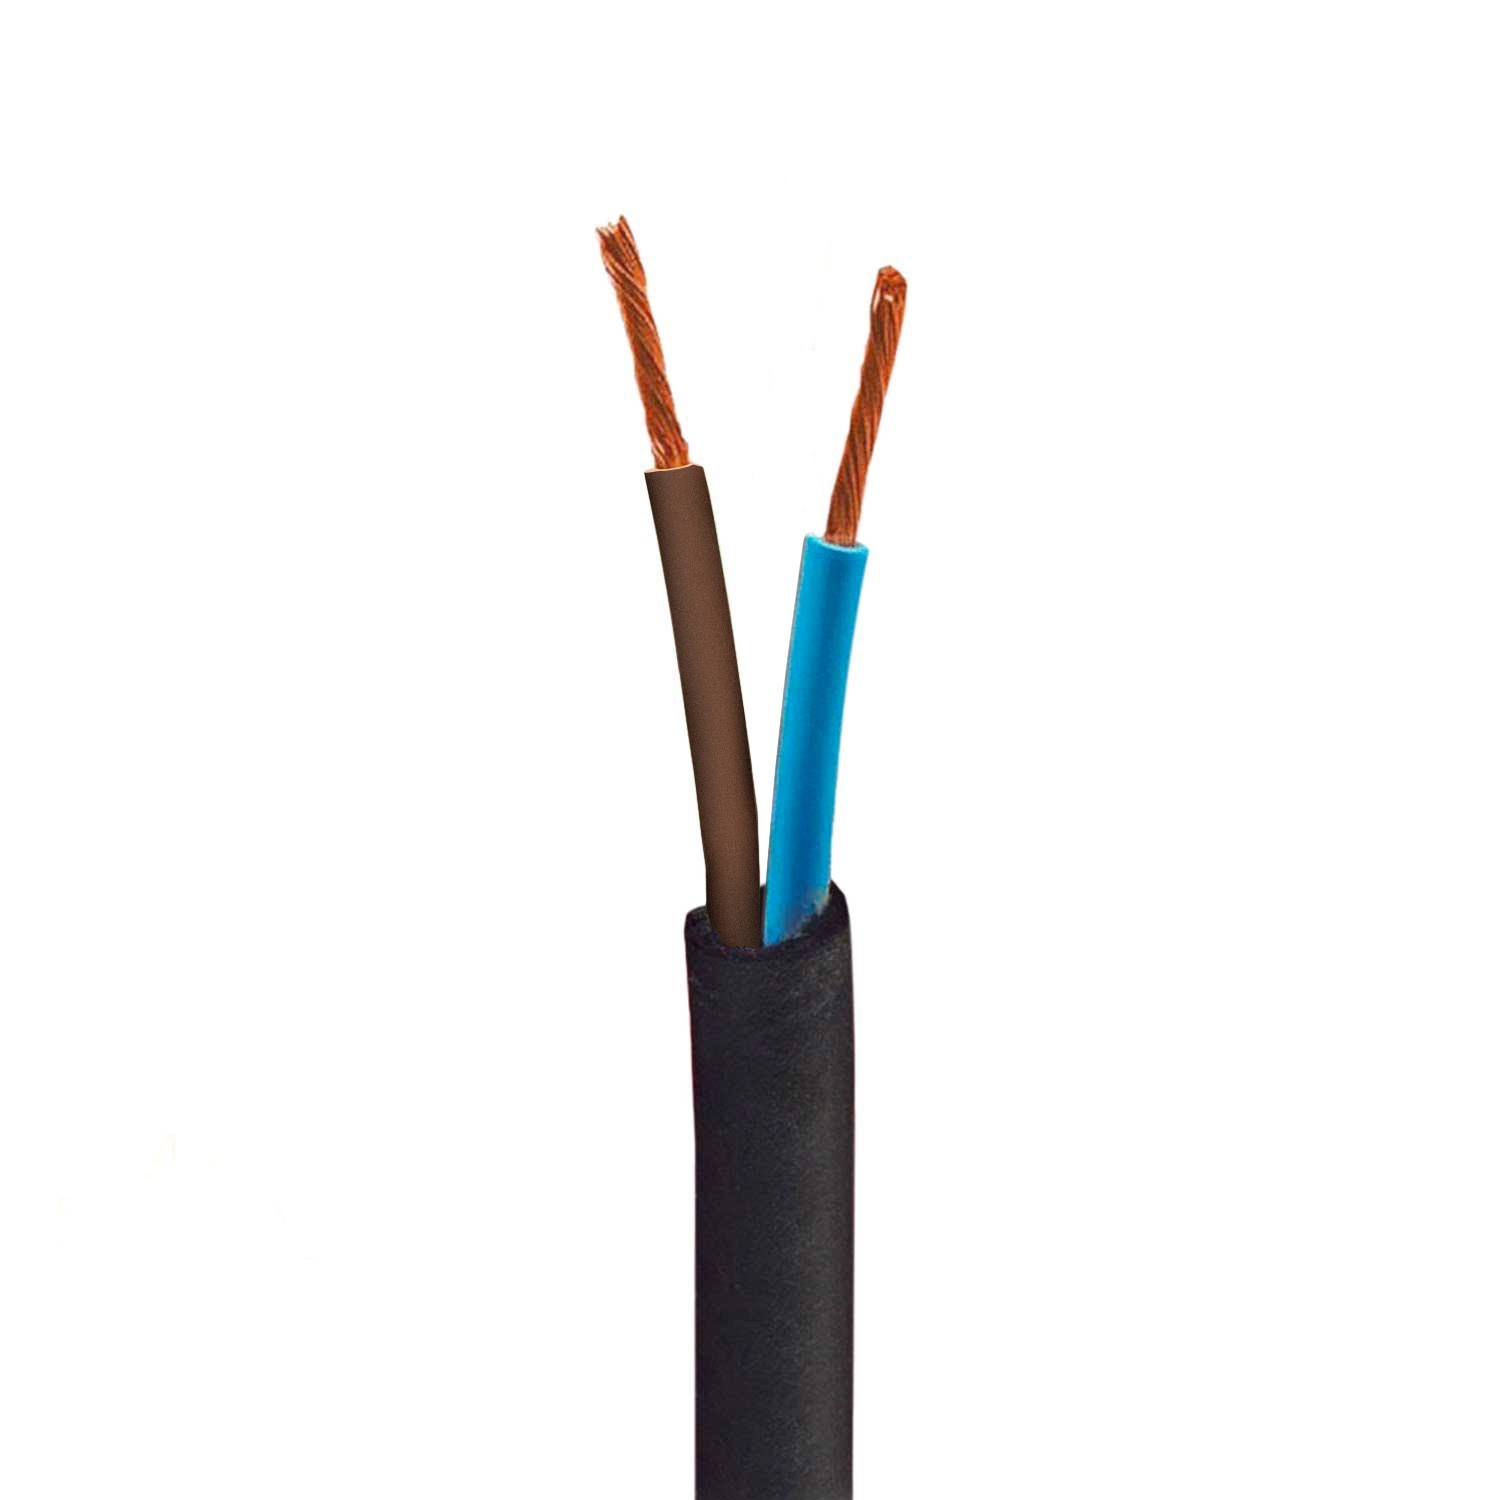 https://www.creative-cables.at/121725-big_default/outdoor-elektrokabel-mit-textilummantelung-zick-zack-muster-turkis-sz11-rund-uv-bestandig-kompatibel-mit-eiva-outdoor-ip65.jpg